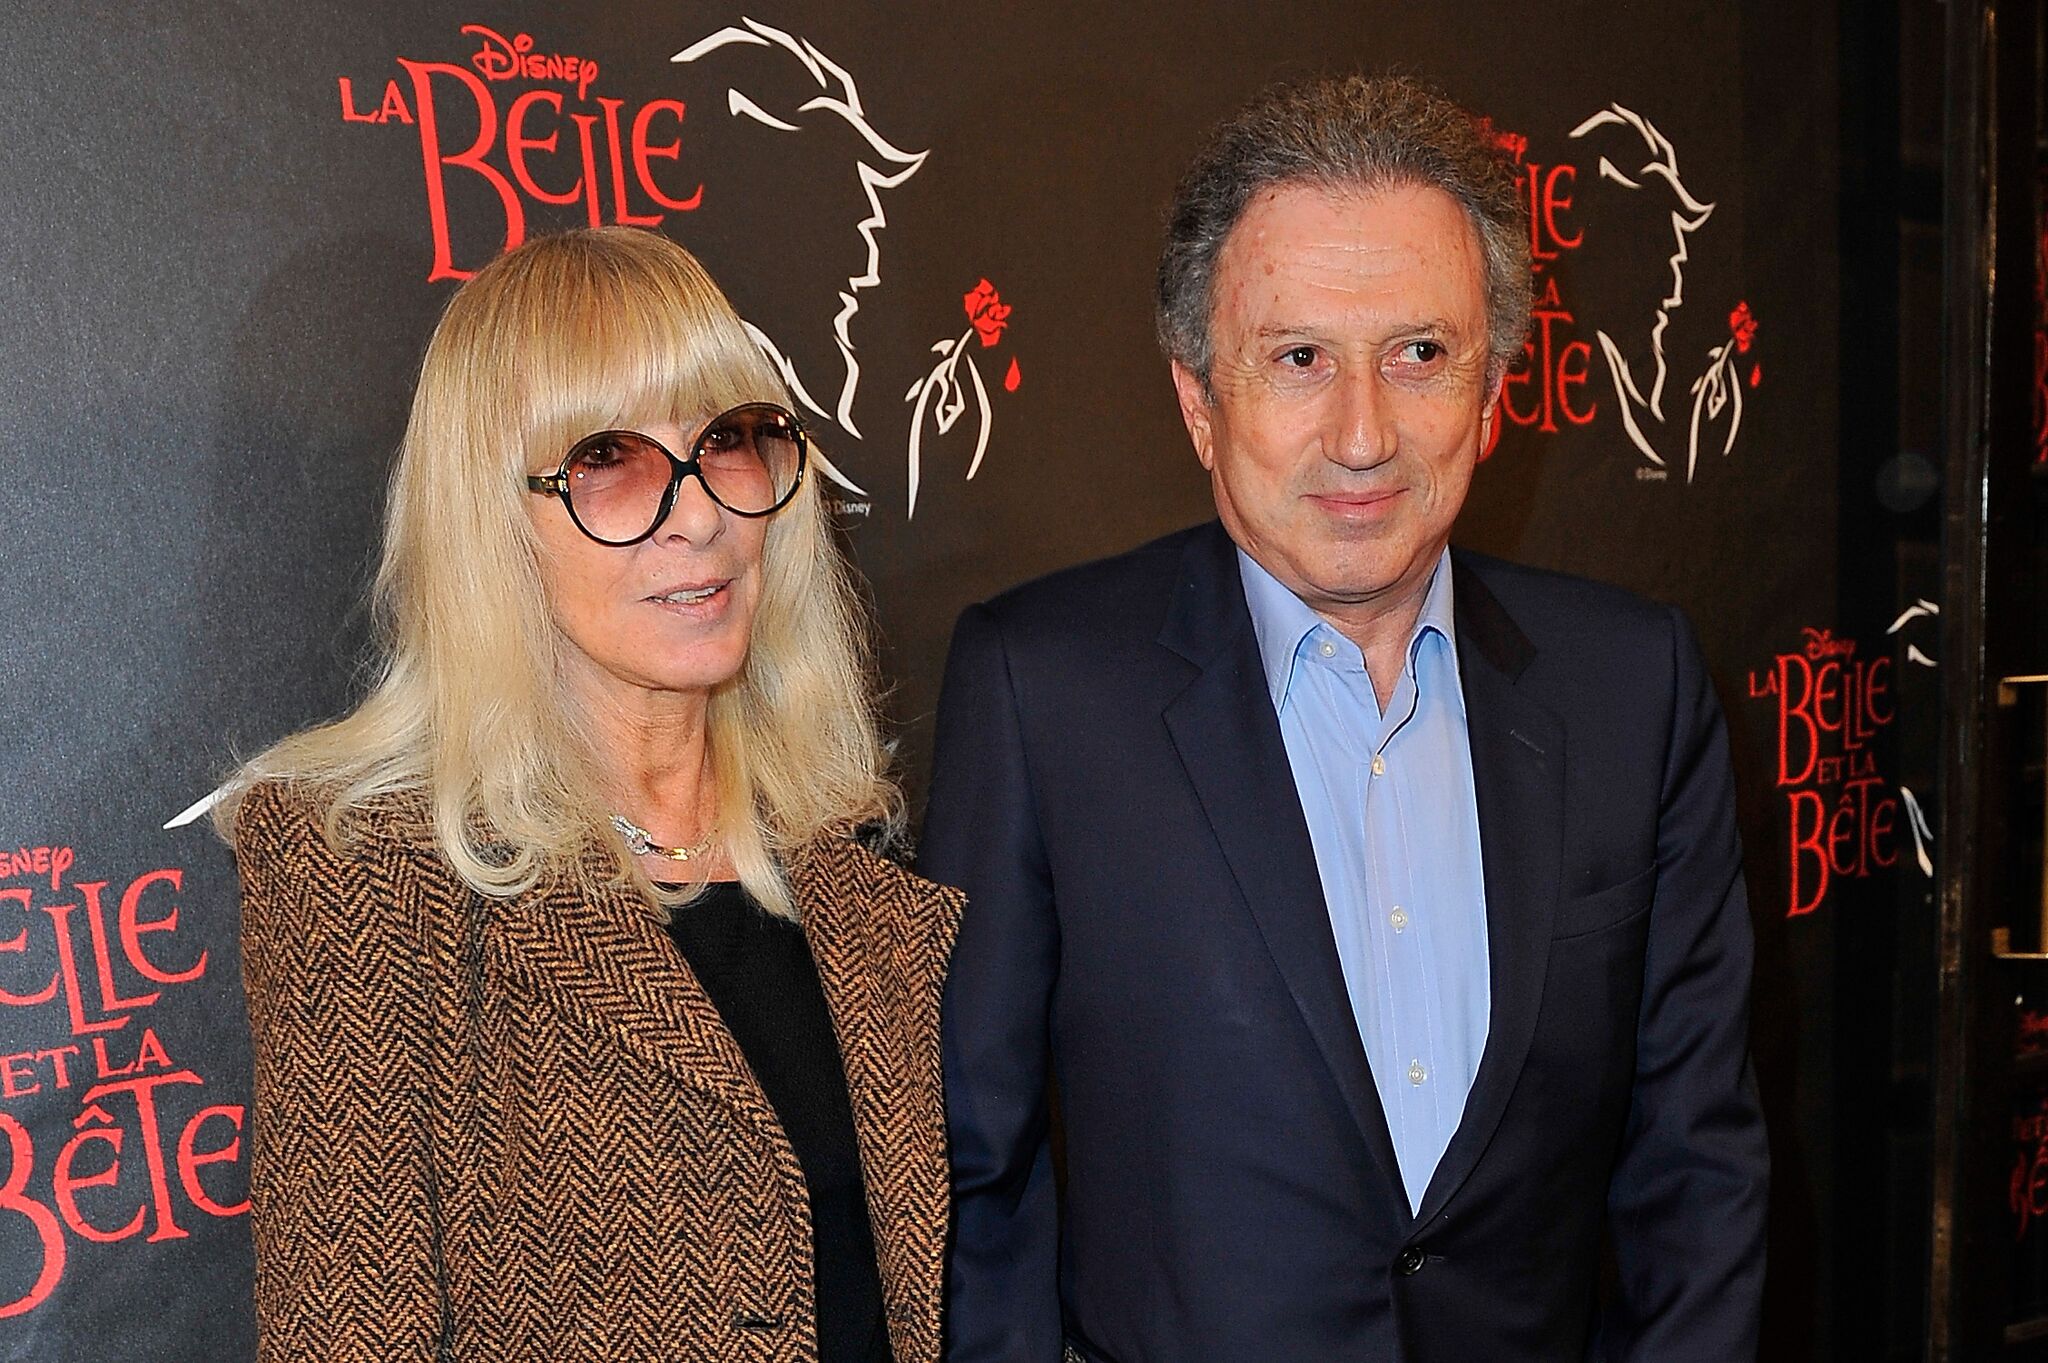 Michel Drucker en compagnie de sa femme l Source: Getty Images